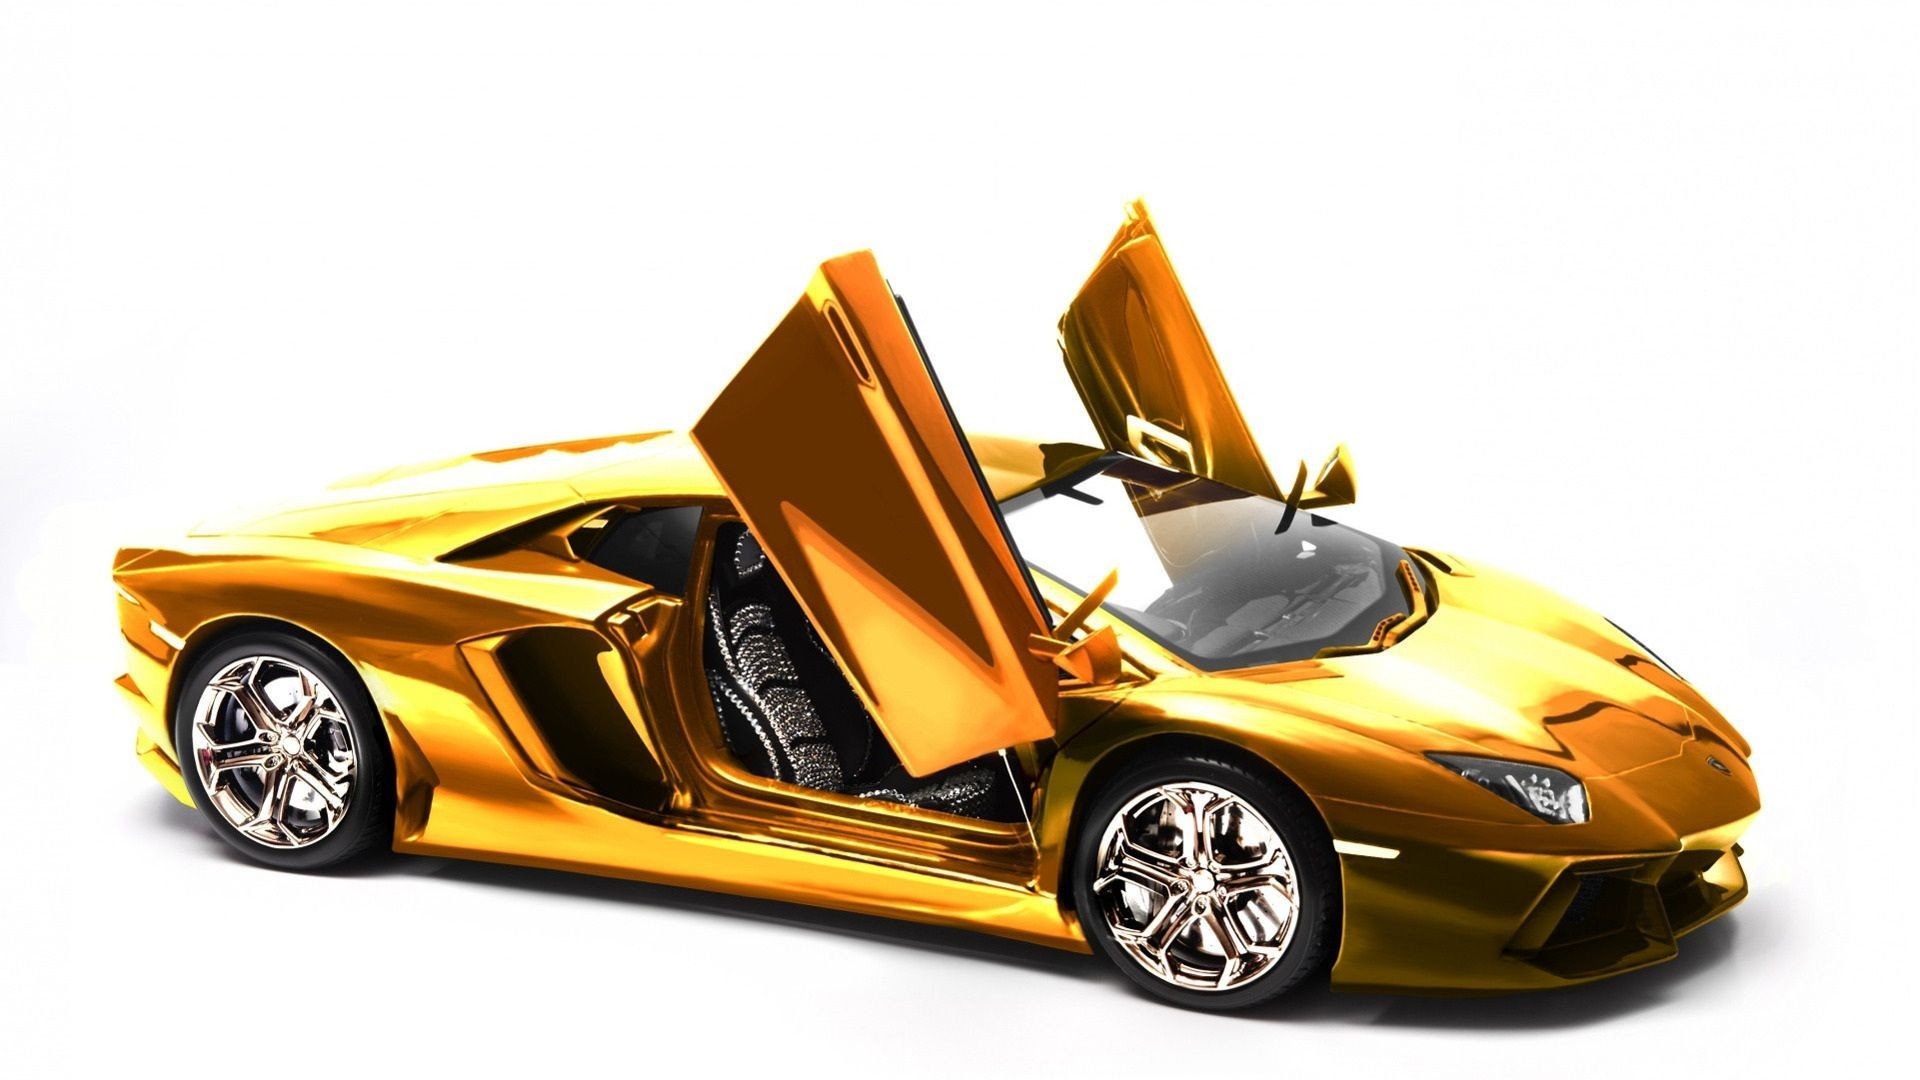 ゴールドの車の壁紙 陸上車両 車両 車 スーパーカー スポーツカー Wallpaperuse